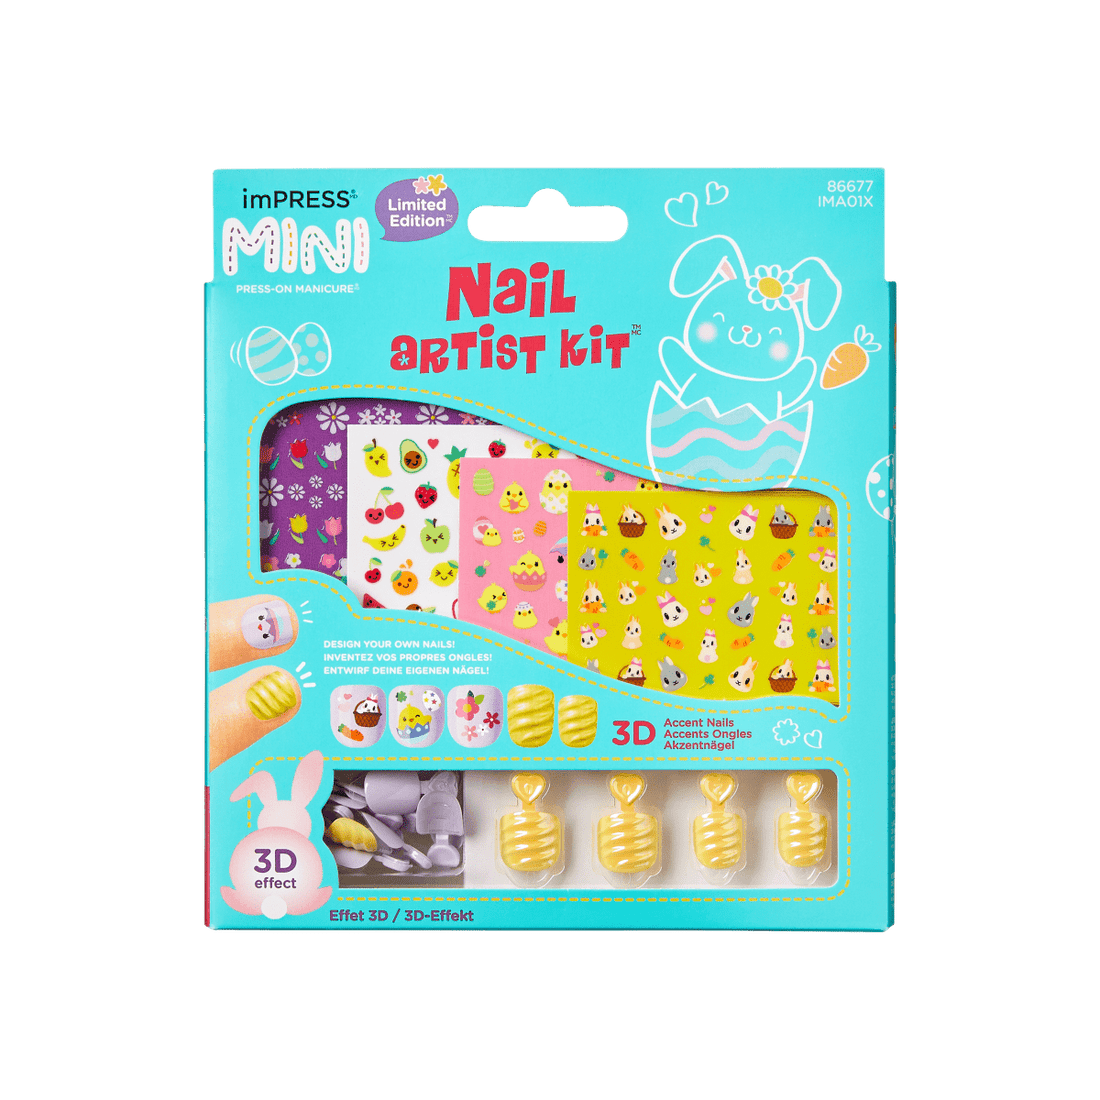 imPRESS Mini Nail Artist Kit- Easter